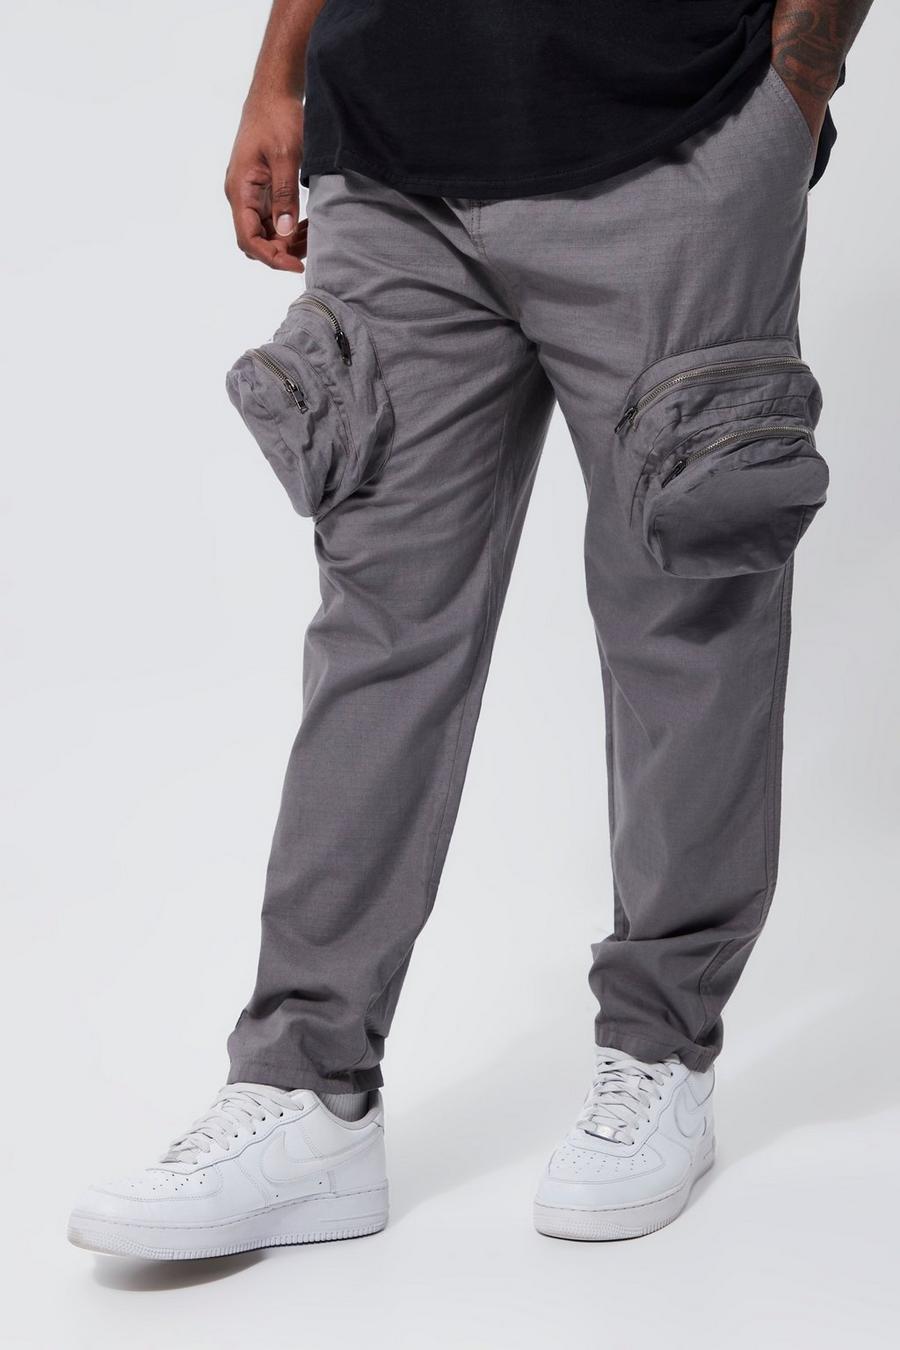 Pantalón Plus cargo ajustado elegante con cremallera 3D, Grey grigio